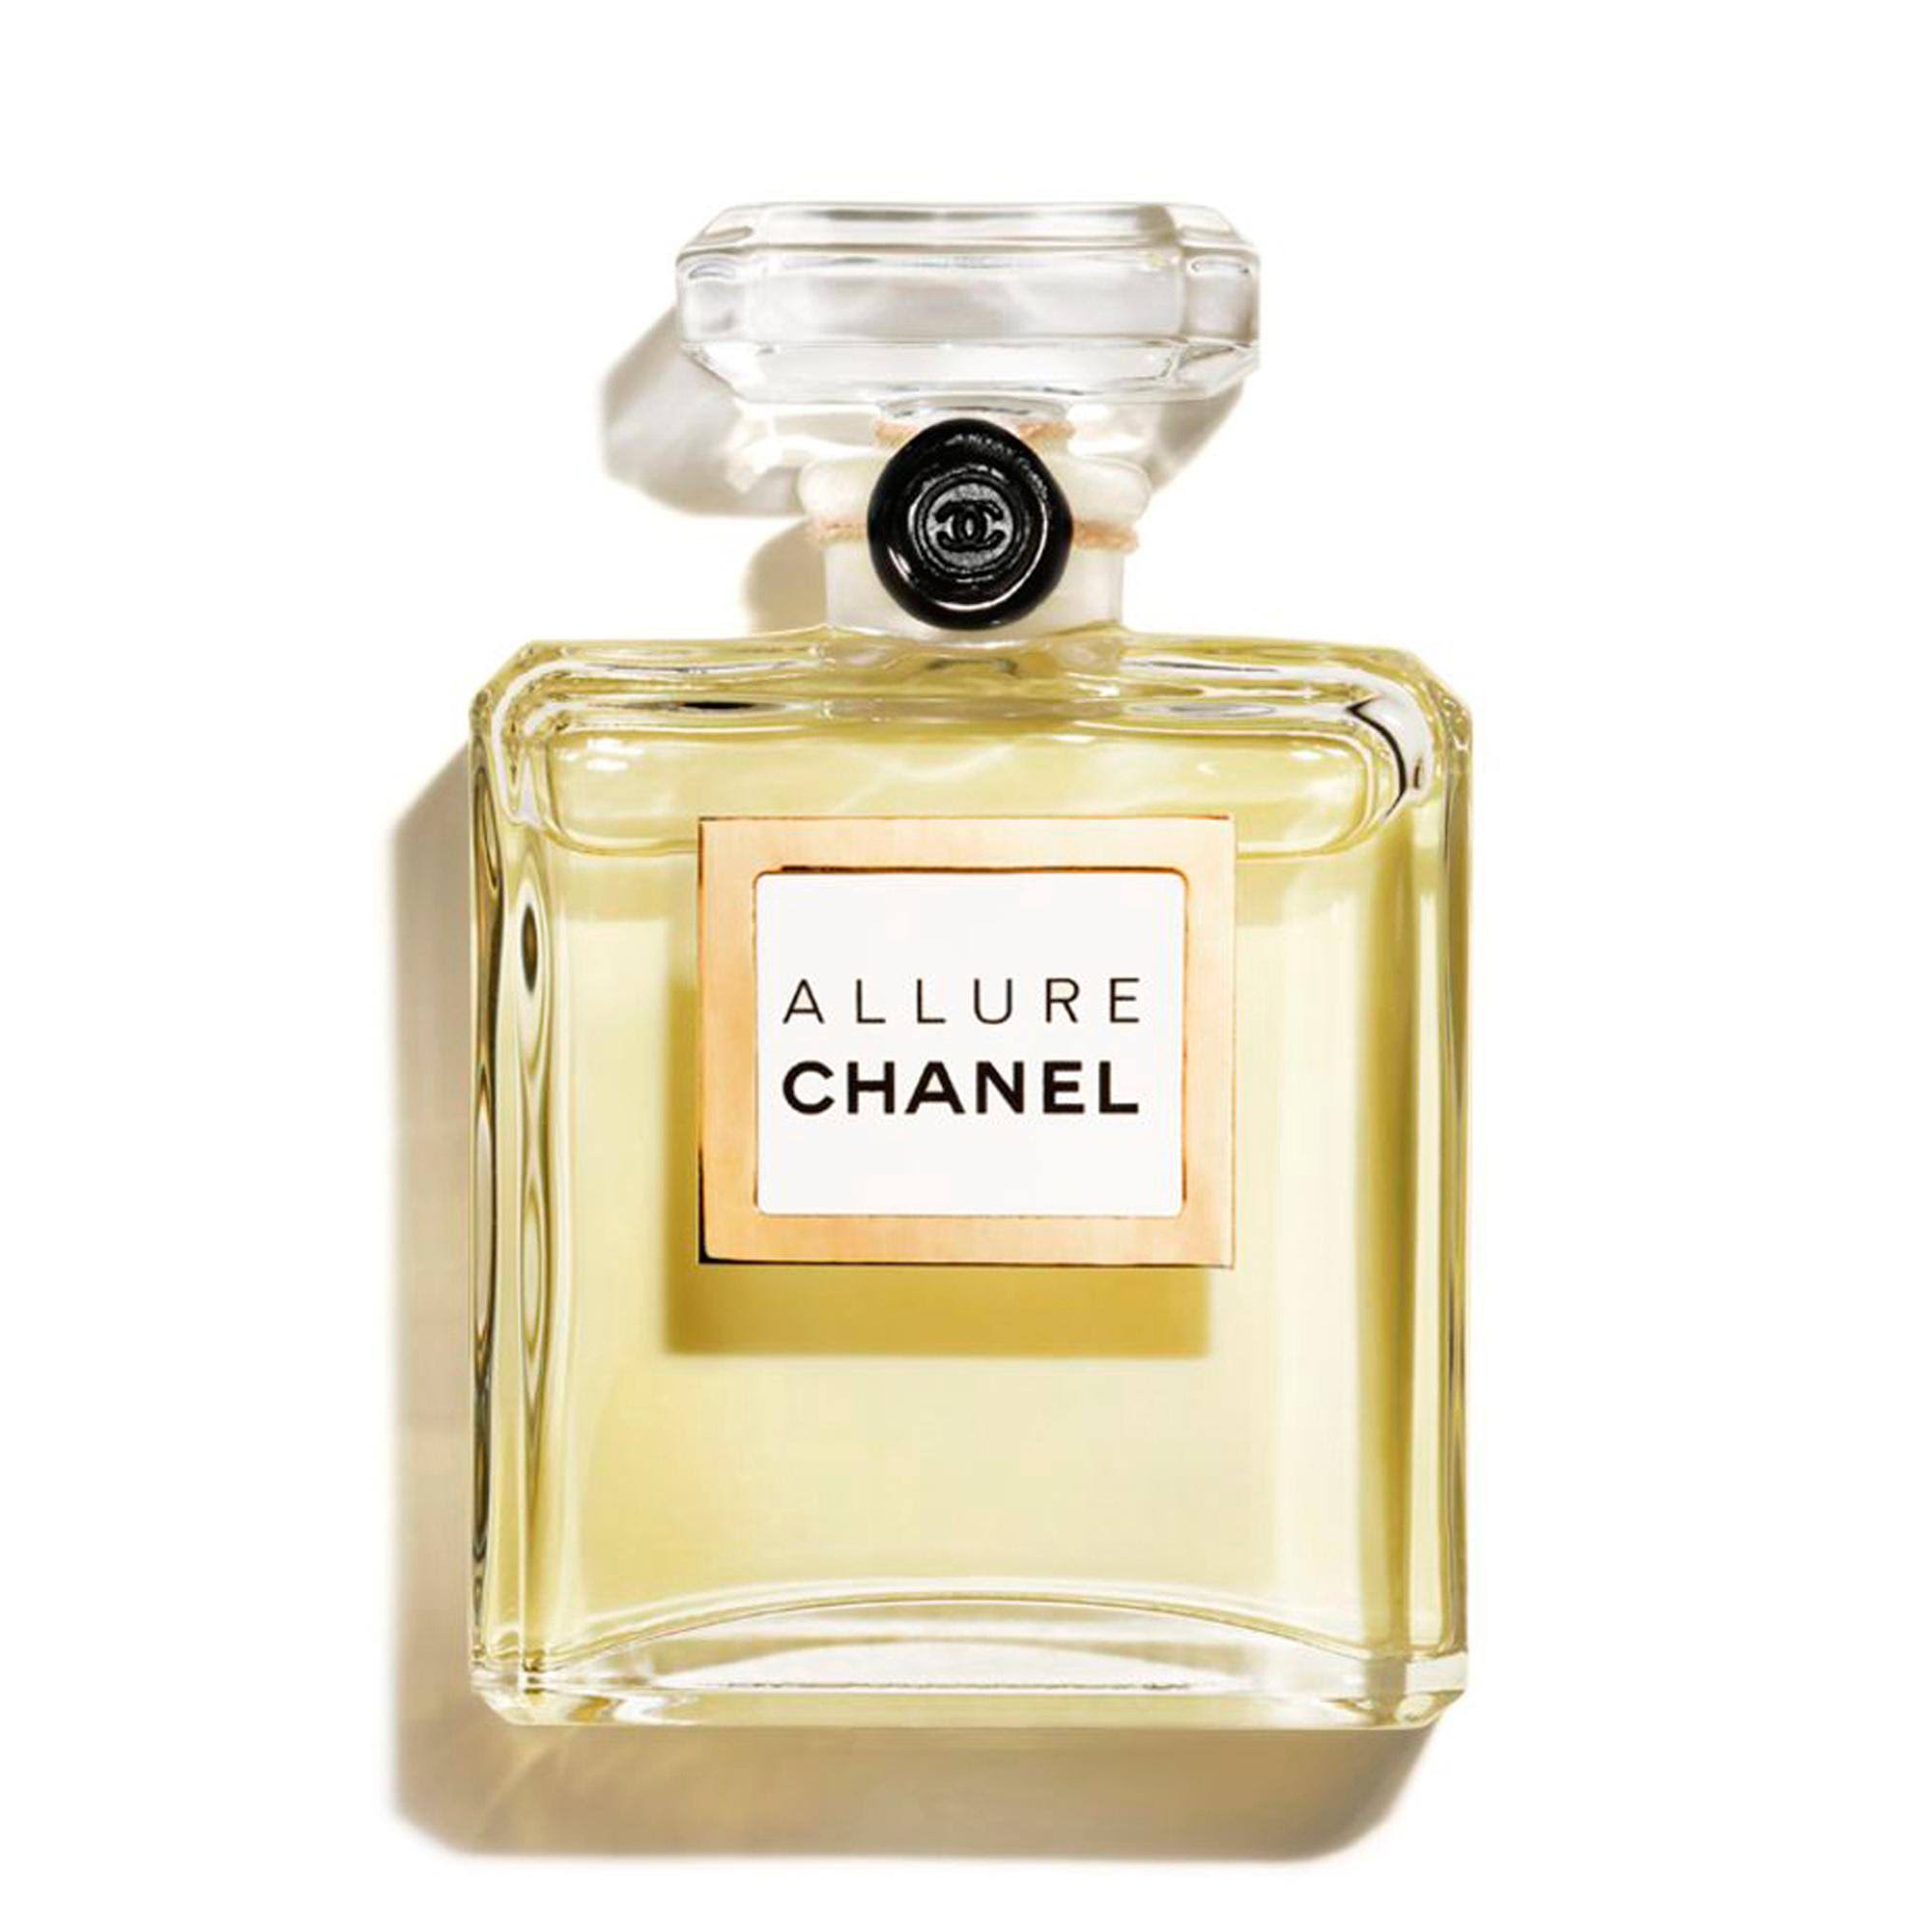 Chanel Allure Parfum - 7.5ml